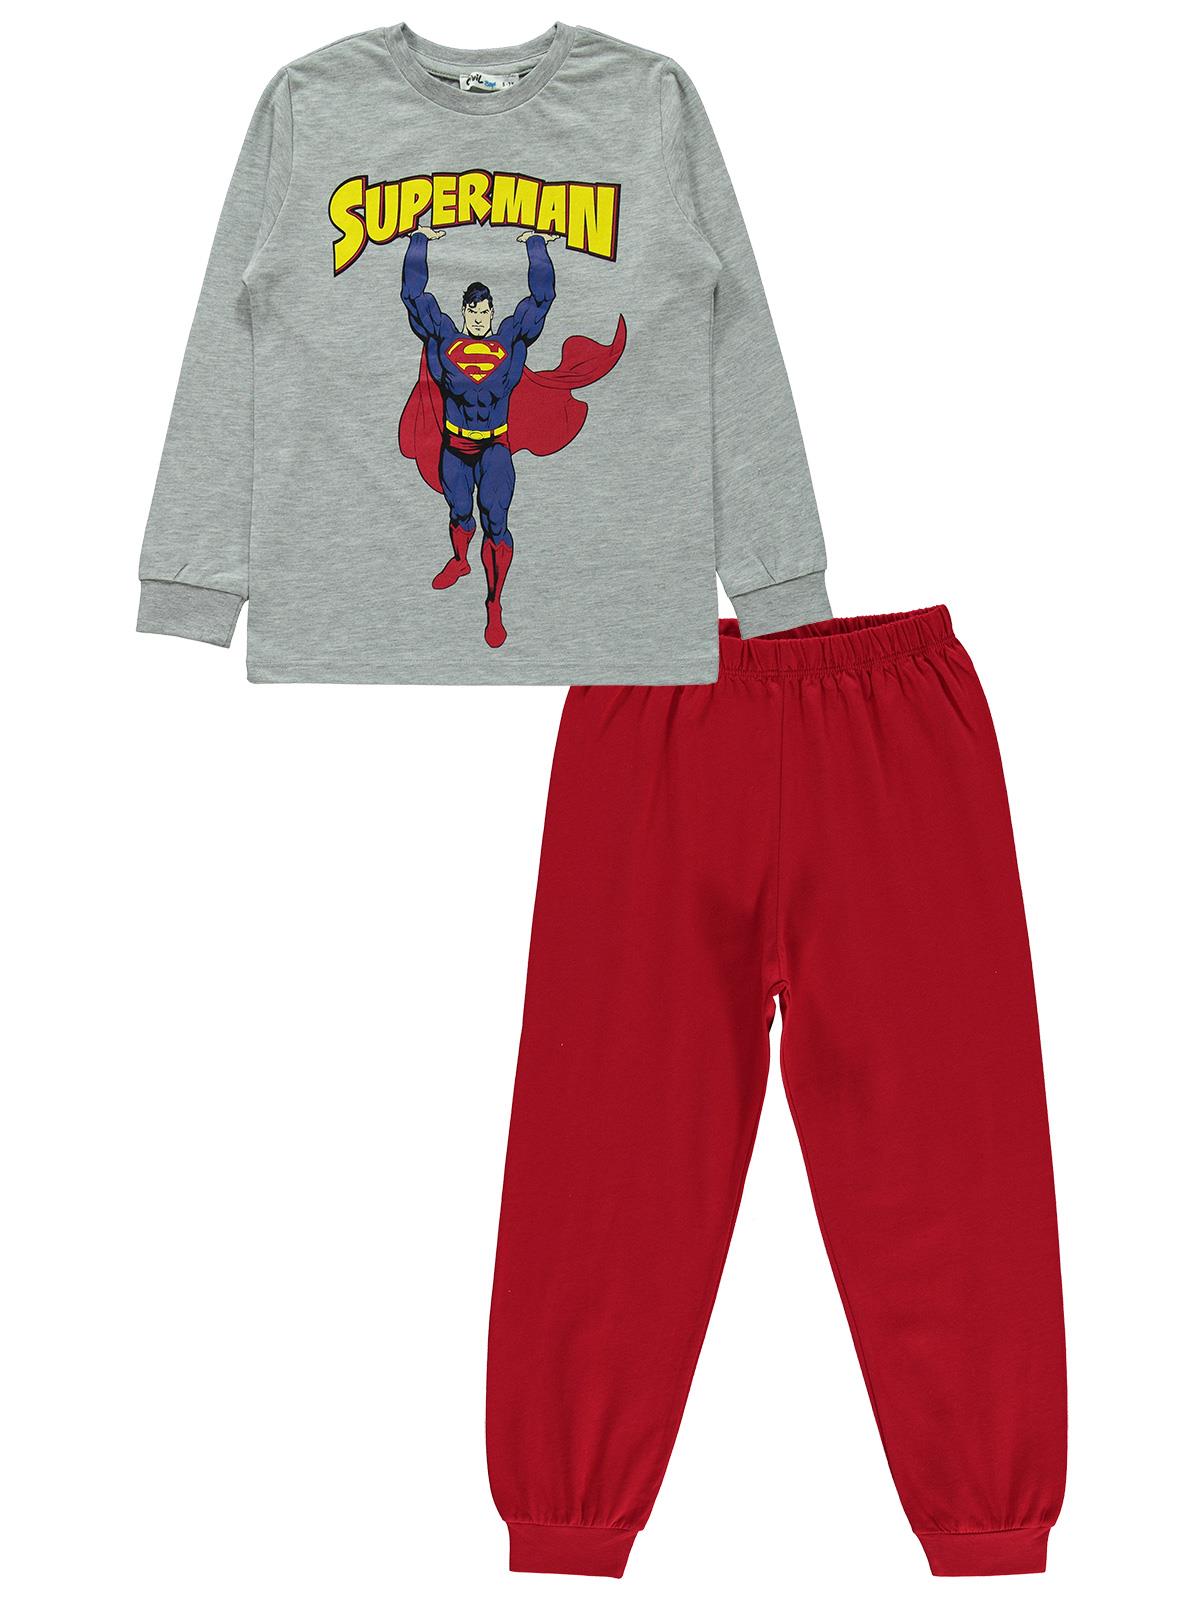 Süperman Erkek Çocuk Pijama Takımı 6-9 Yaş Grimelanj